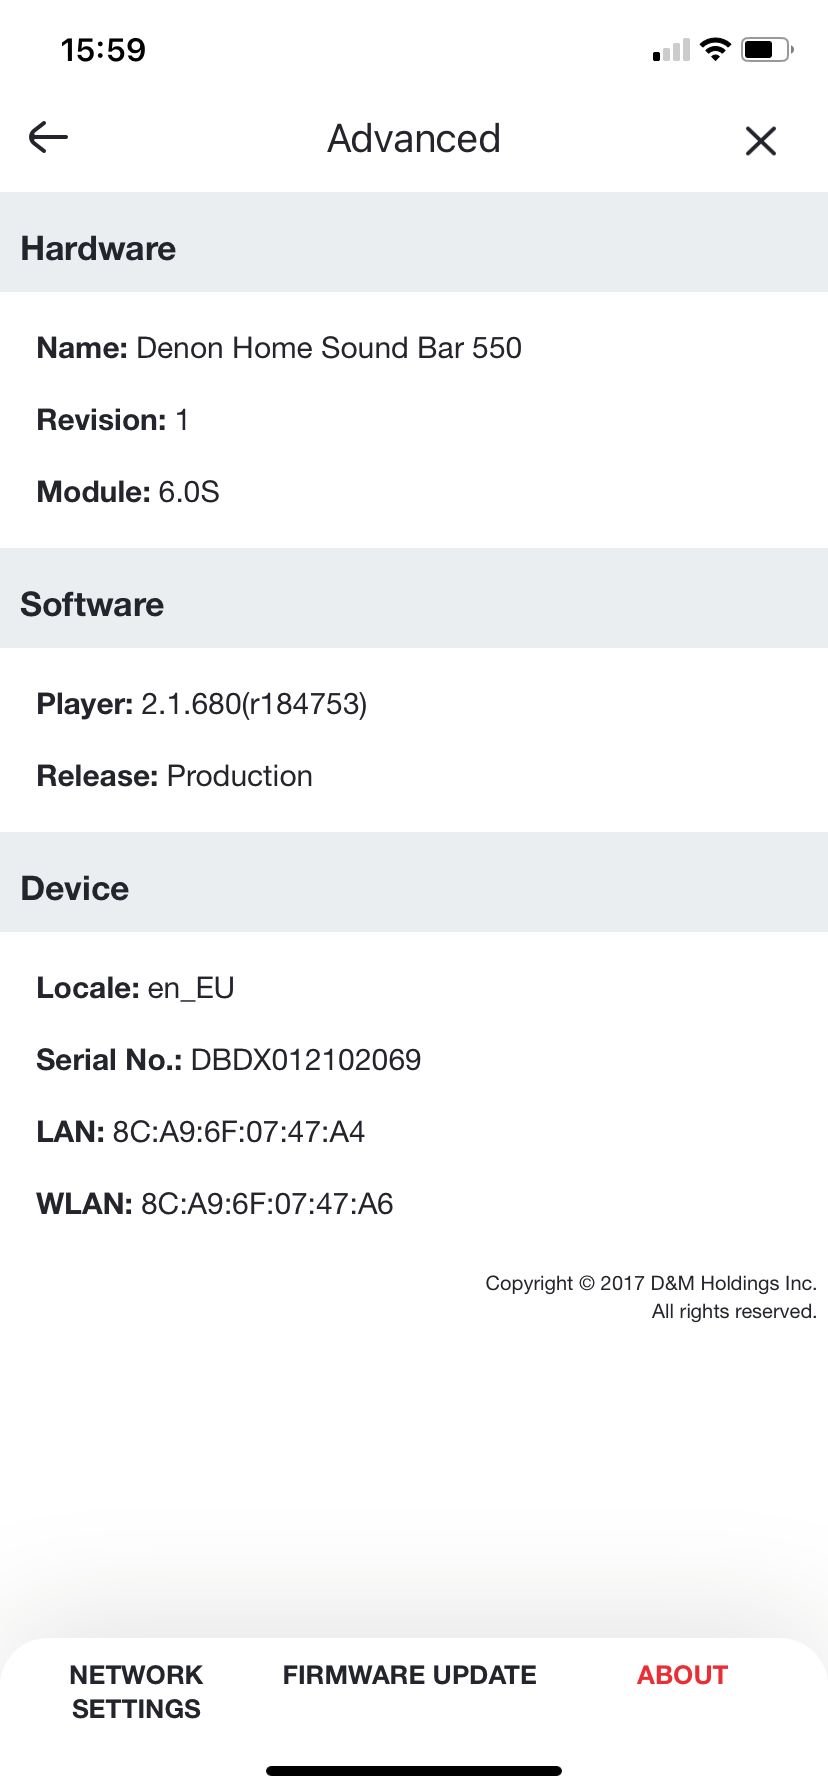 最近 Disney+ 正式在香港推出，令不少朋友有興趣升級一下屋企的影音硬件配套。之前測試過的 Denon Home Sound Bar 550 就是一款短身小巧但功能和音質都相當全面的 Soundbar 選擇，Denon 最新更推出了 firmware 升級，讓它可以無線配合 Denon Home 150/250/350、HEOS SUBWOOFER，組成完整的 5.1 聲道系統。本來以為只是補足後方的環繞聲效，不過新 firmware 之下原來無線後置也可以參與模擬 3D 音效輸出，讓這套 Denon Home Theatre System 表現好接近實體天花喇叭，效果十分驚喜。